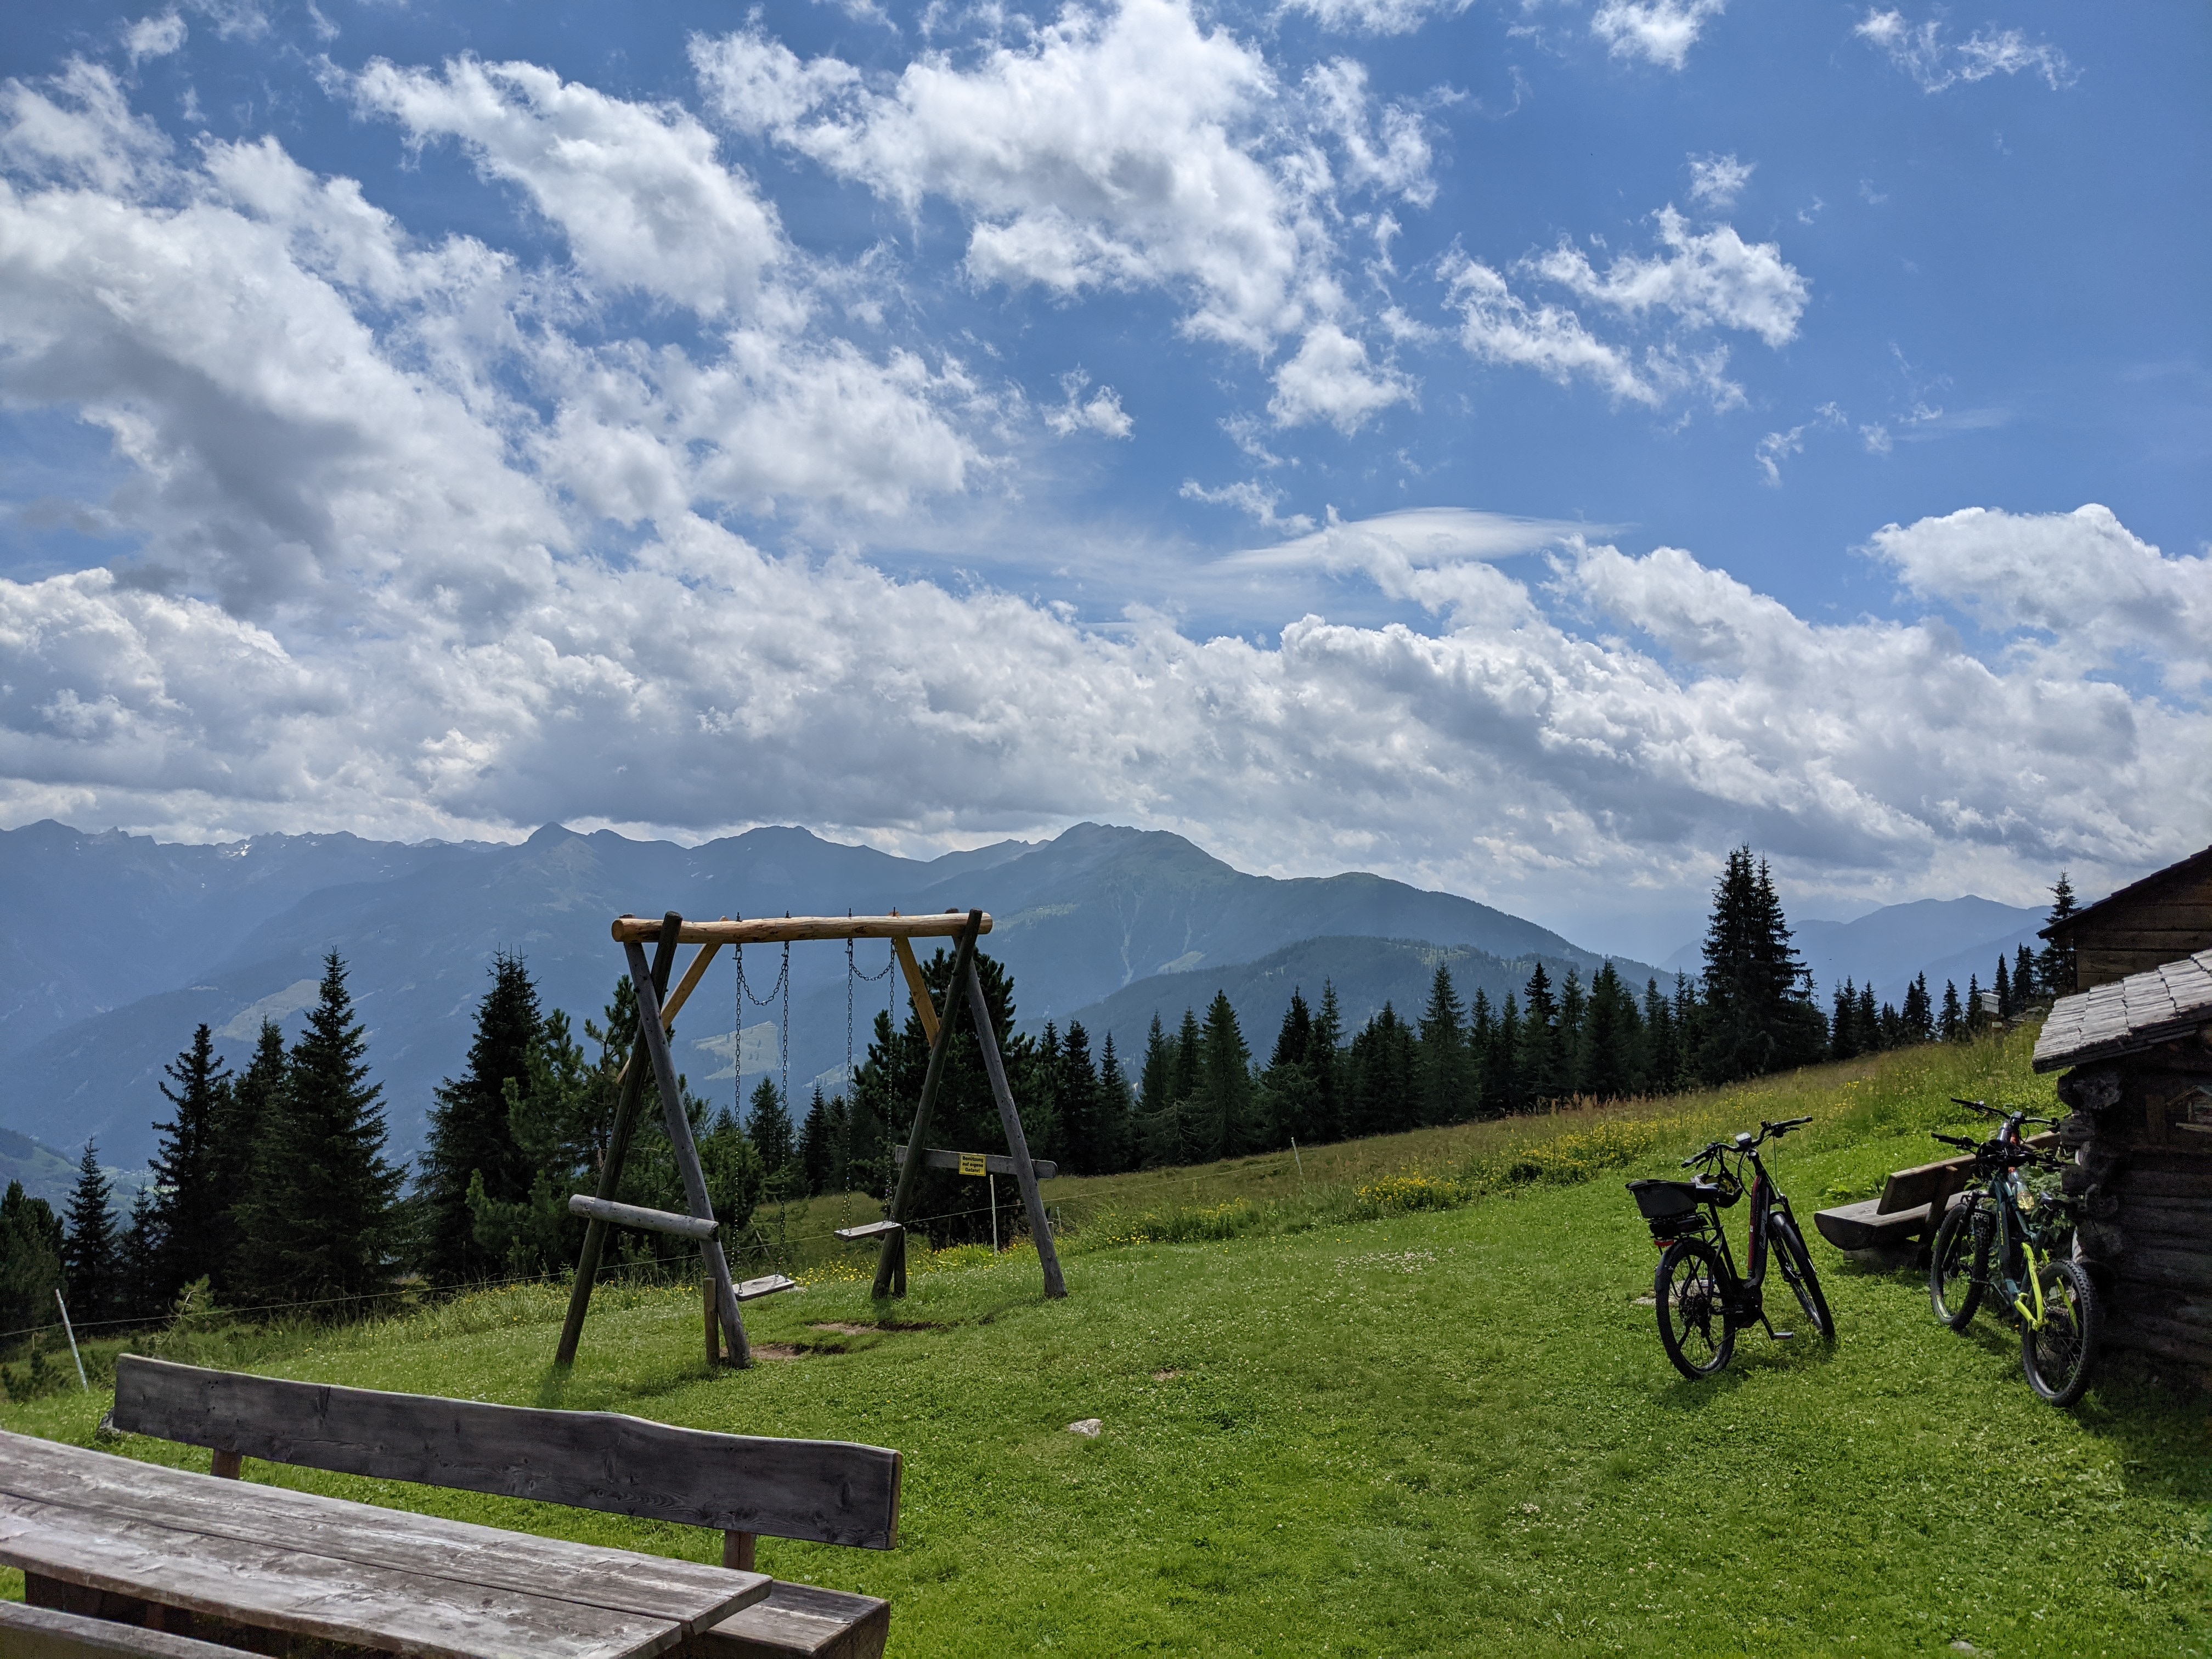 Mountain view in Austria/Tirol